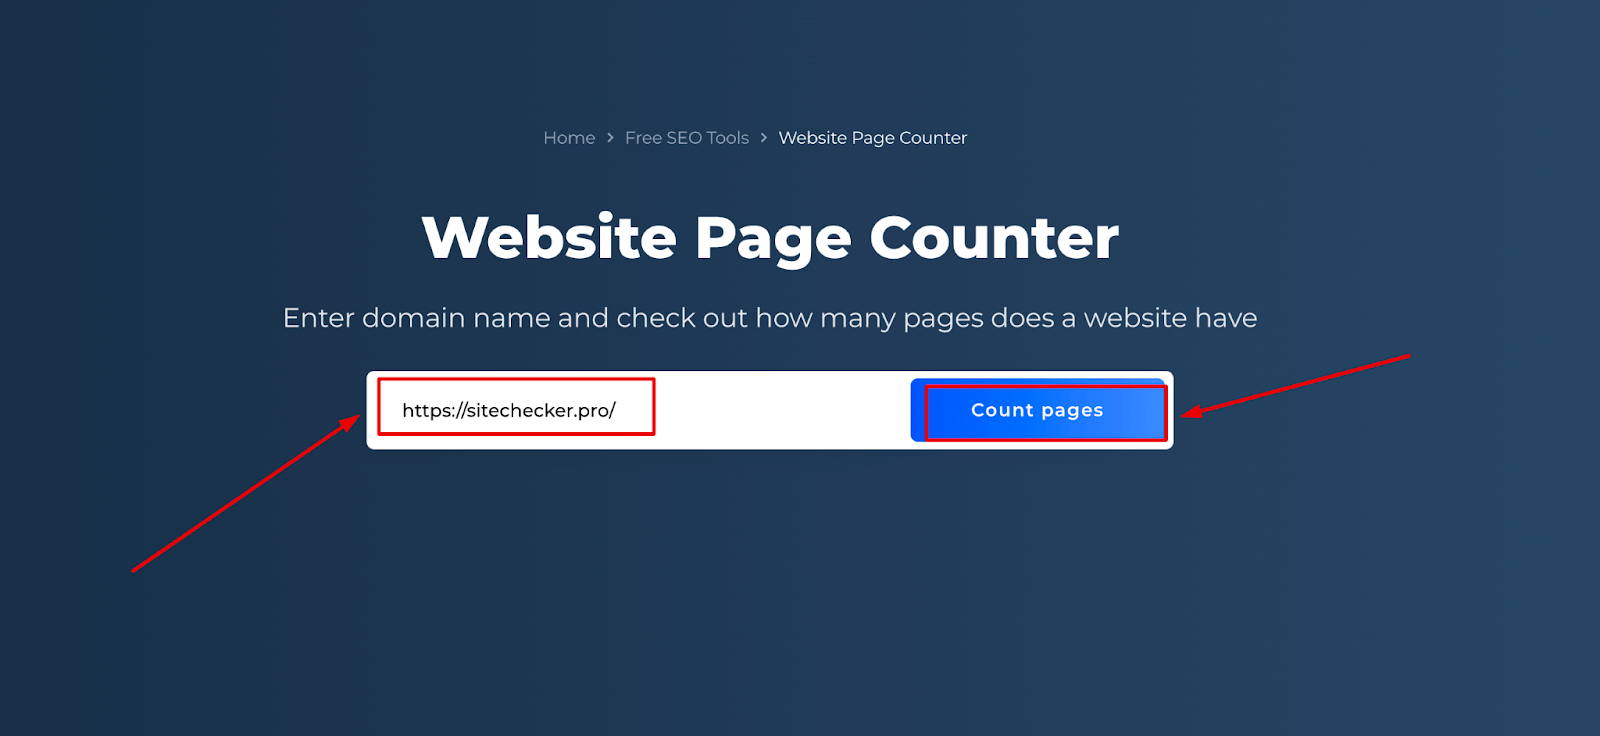 Contador de páginas web